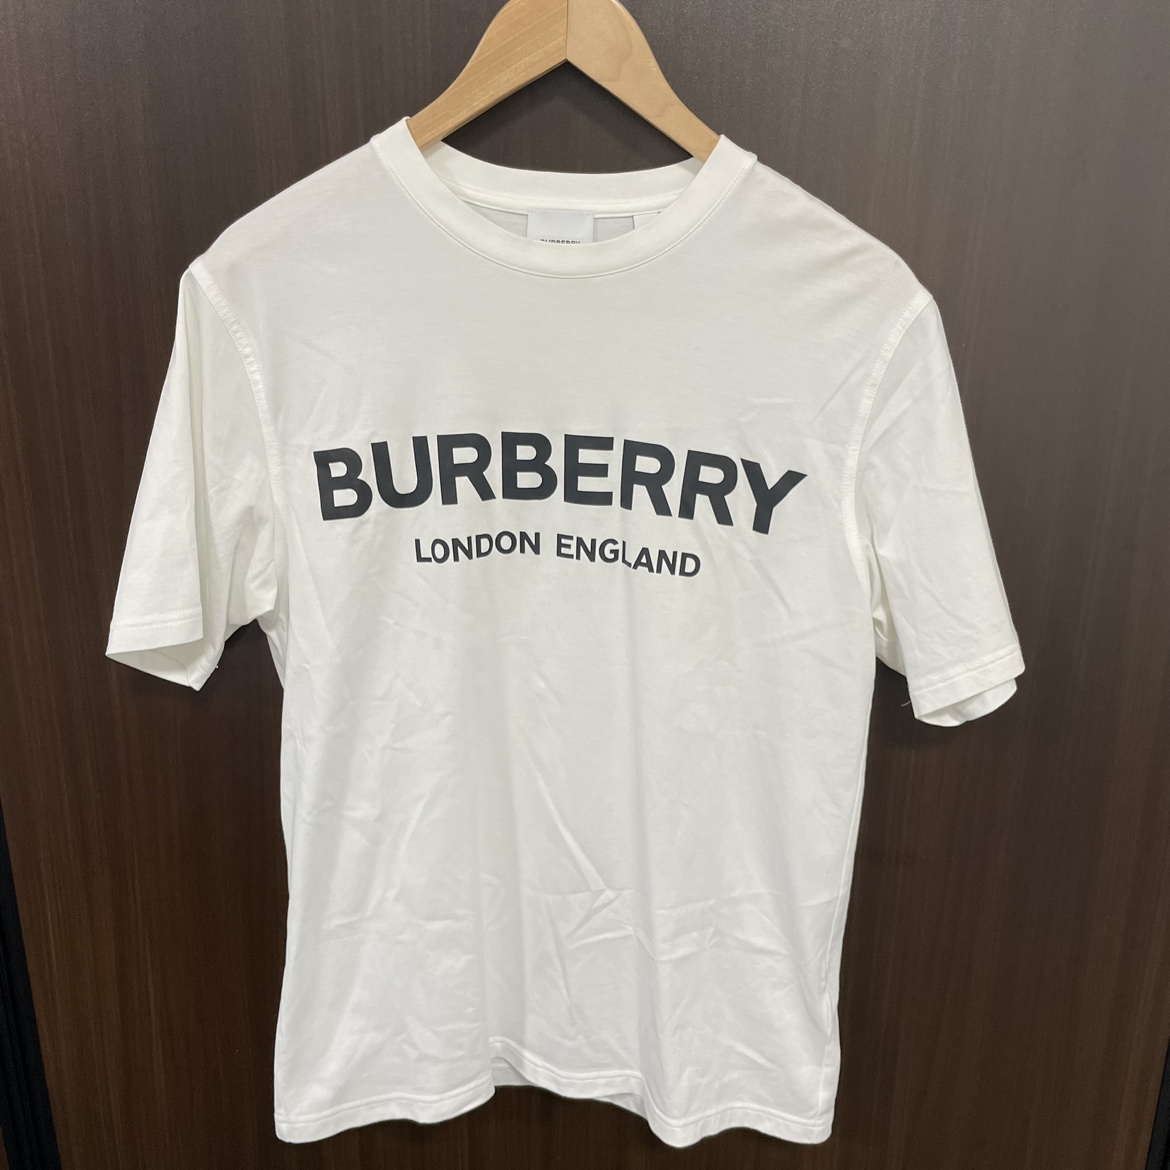 バーバリーの8026017 LETCHFORD 白 ロゴプリント クルーネックTシャツの買取実績です。